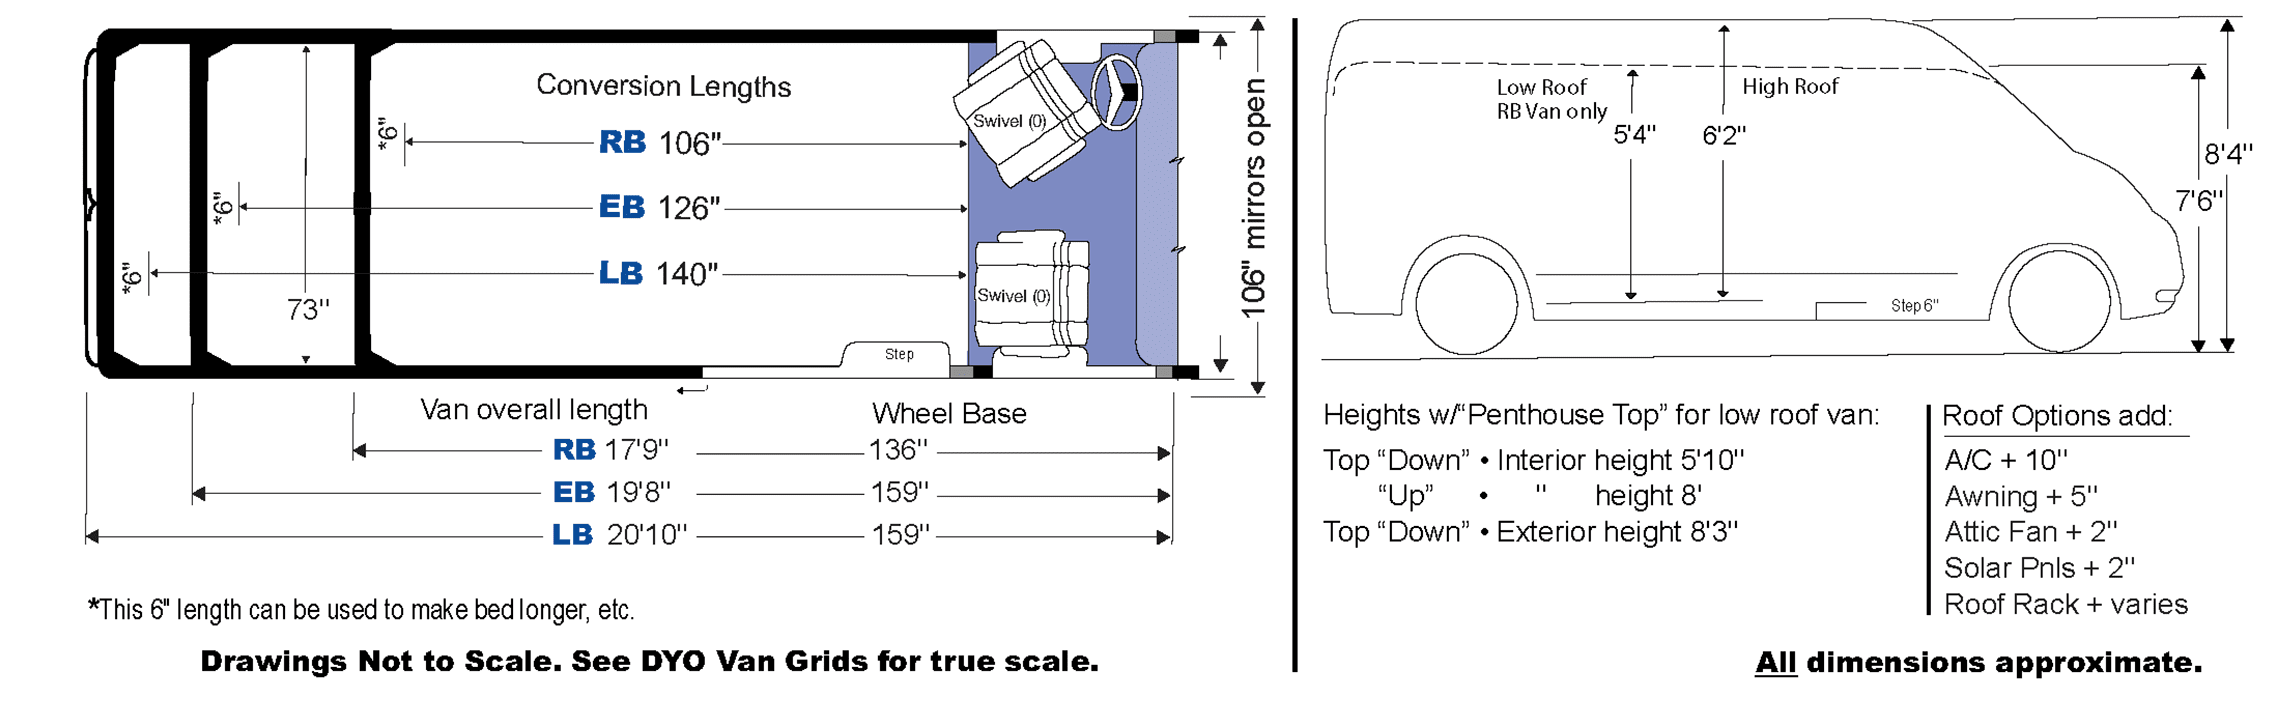 vans size measurements